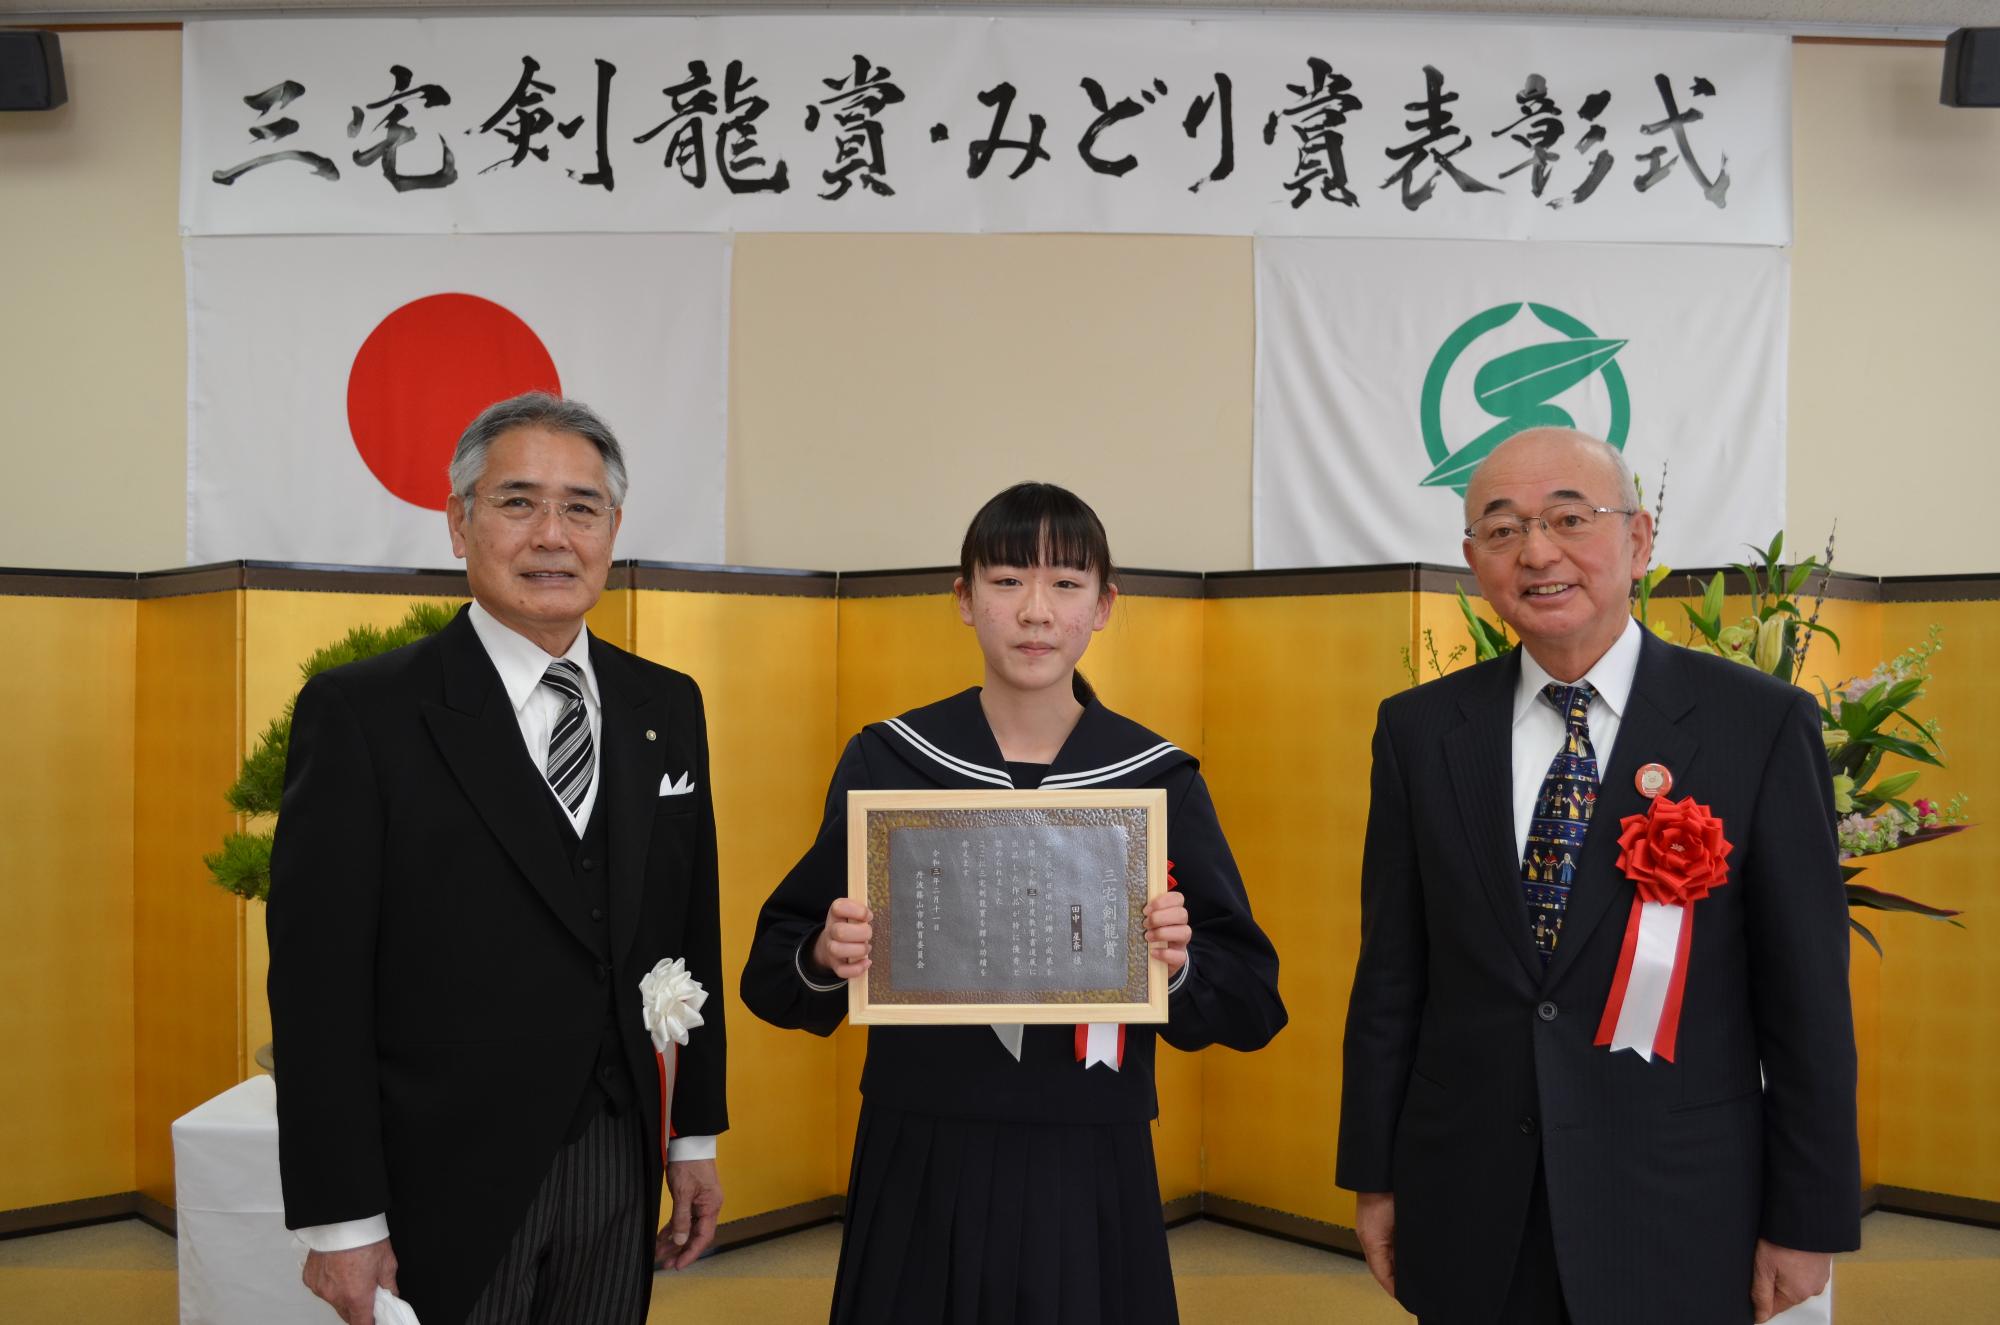 教育長と市長、表彰盾を手に持つ田中さん。